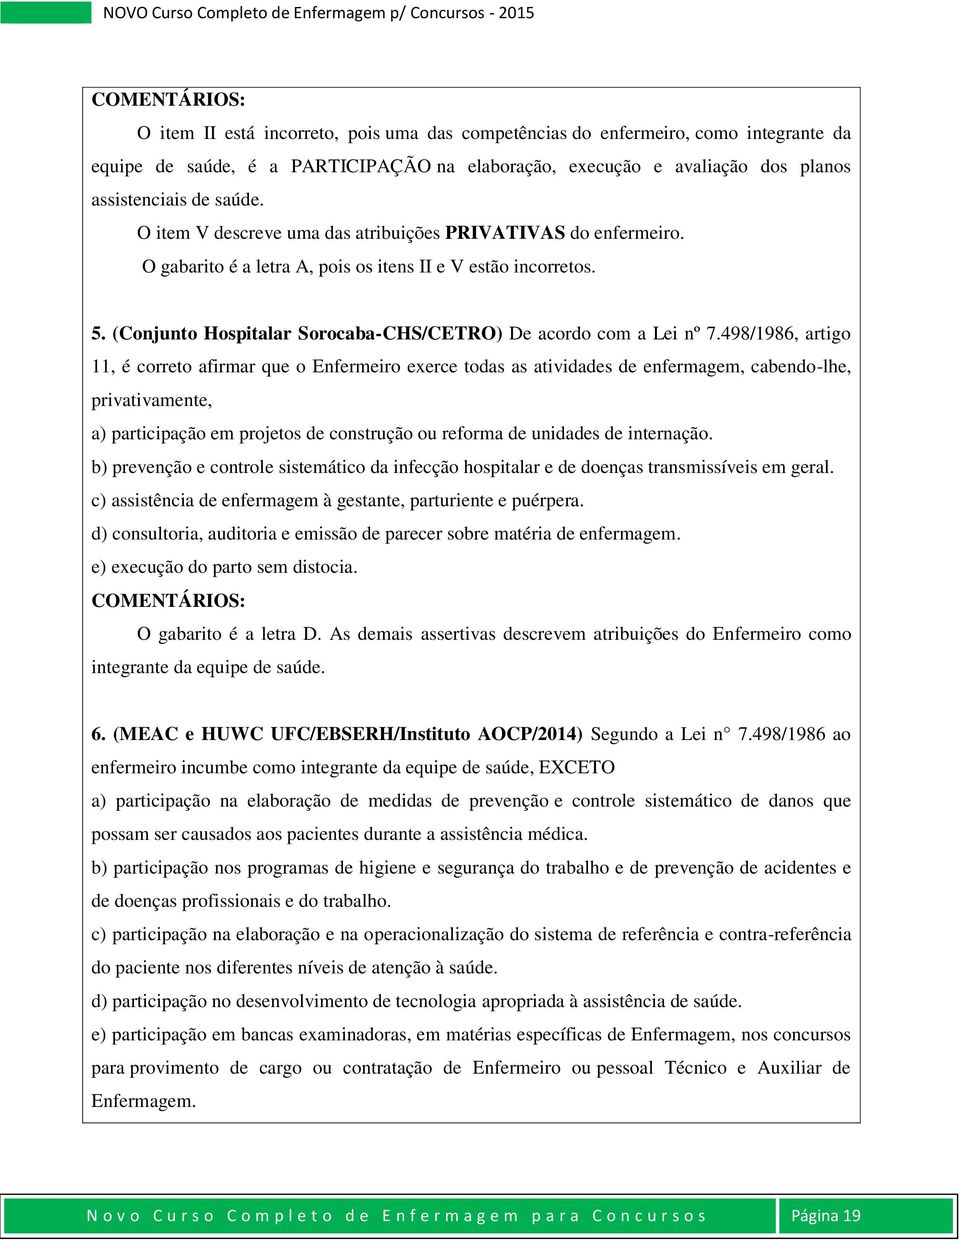 (Conjunto Hospitalar Sorocaba-CHS/CETRO) De acordo com a Lei nº 7.